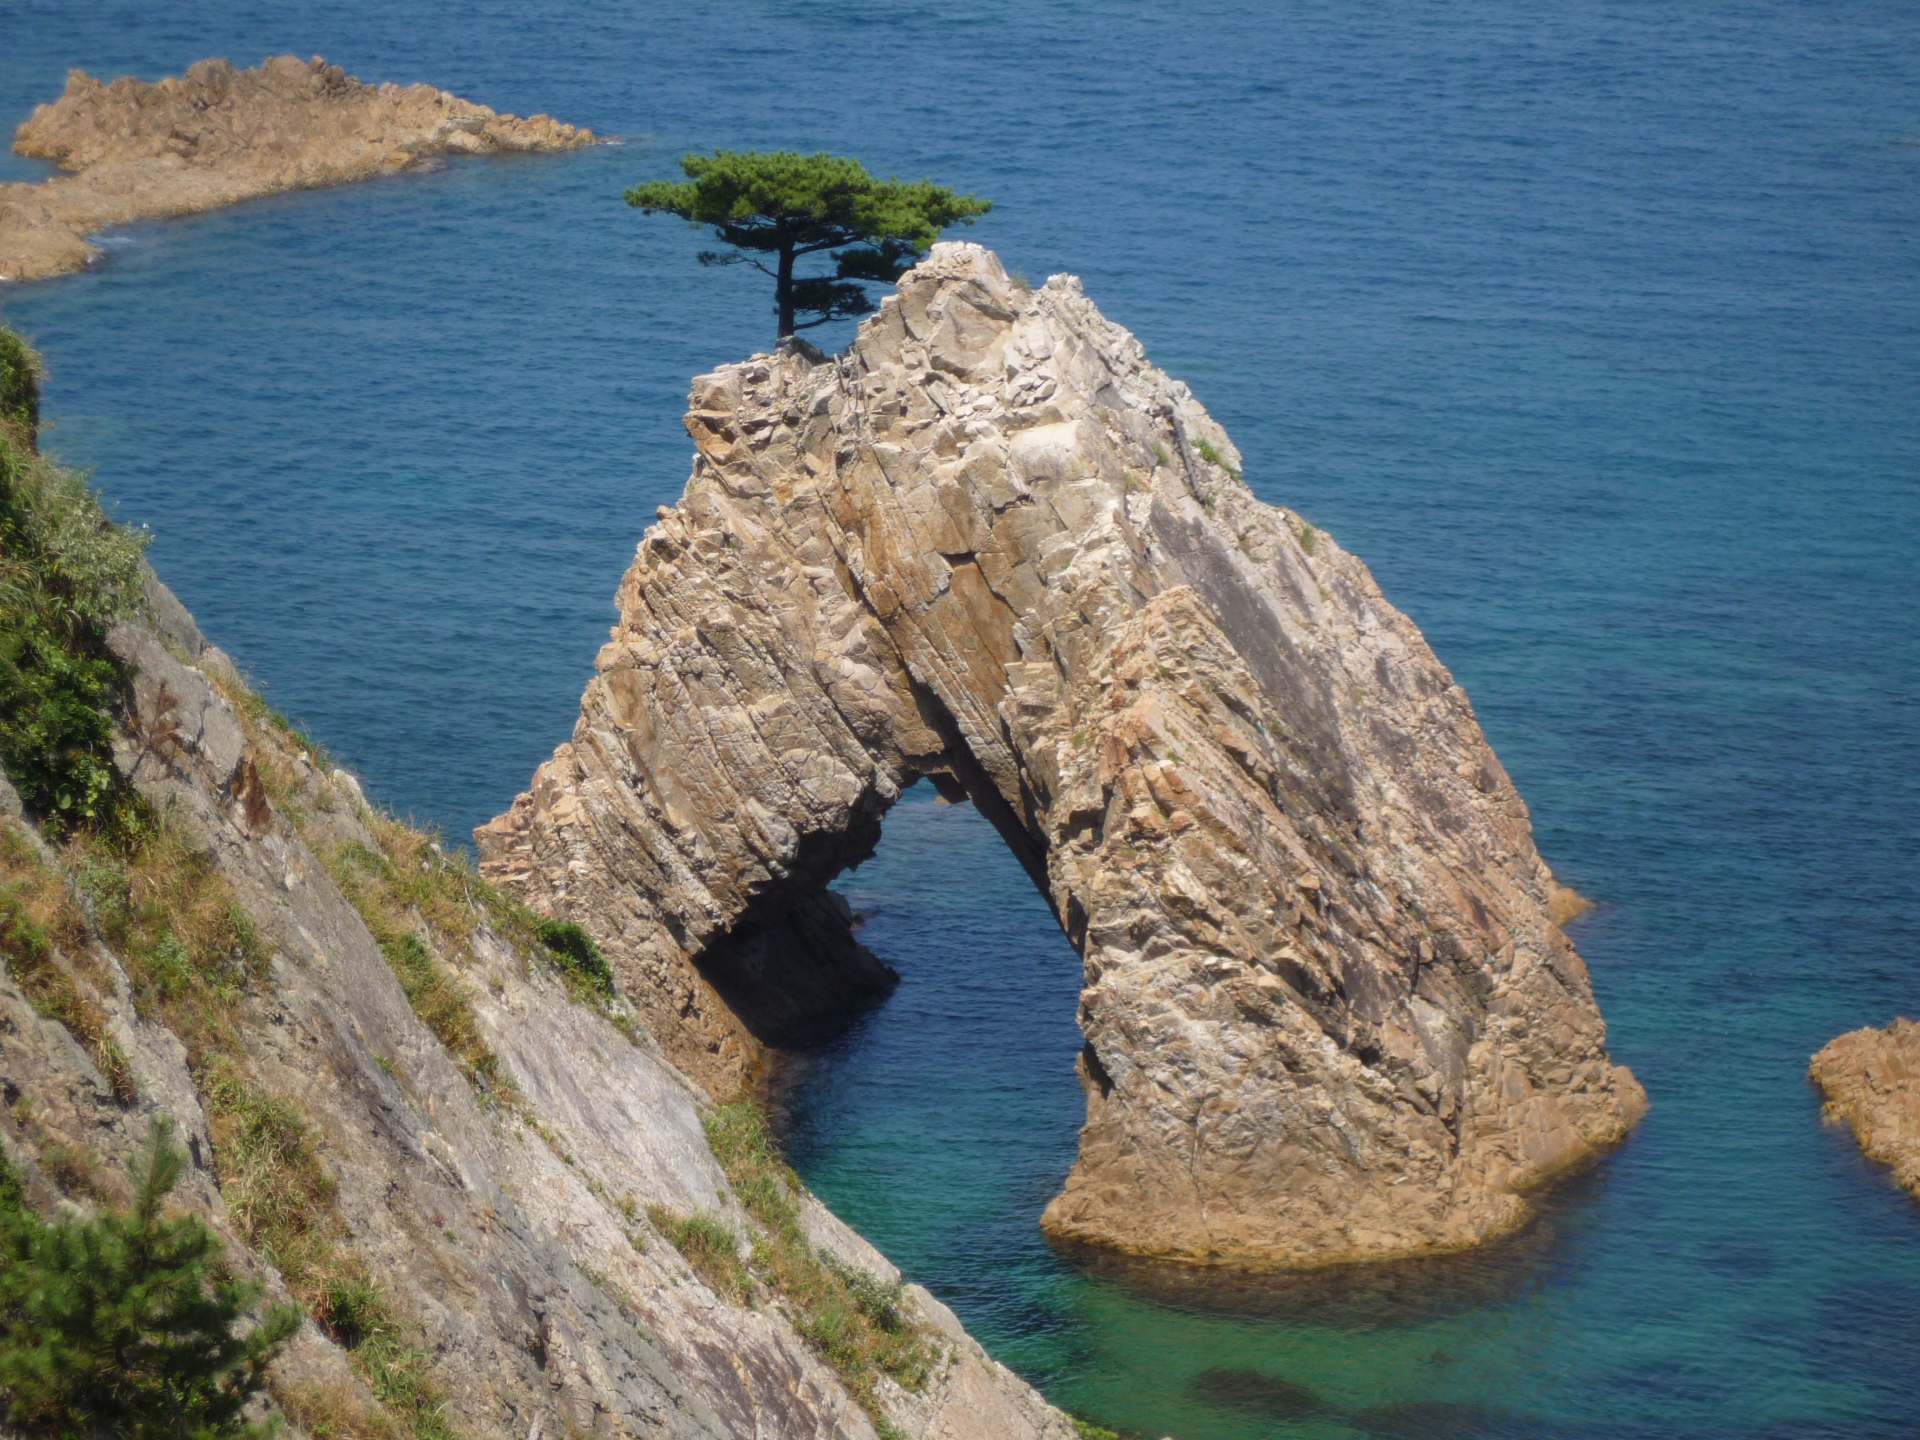 周长 50 米（164 英尺）、高 10 米（33 英尺）的洞穴顶部有一棵漂亮的松树。仙岩松岛是浦富海岸令人难以置信的岩石之一。